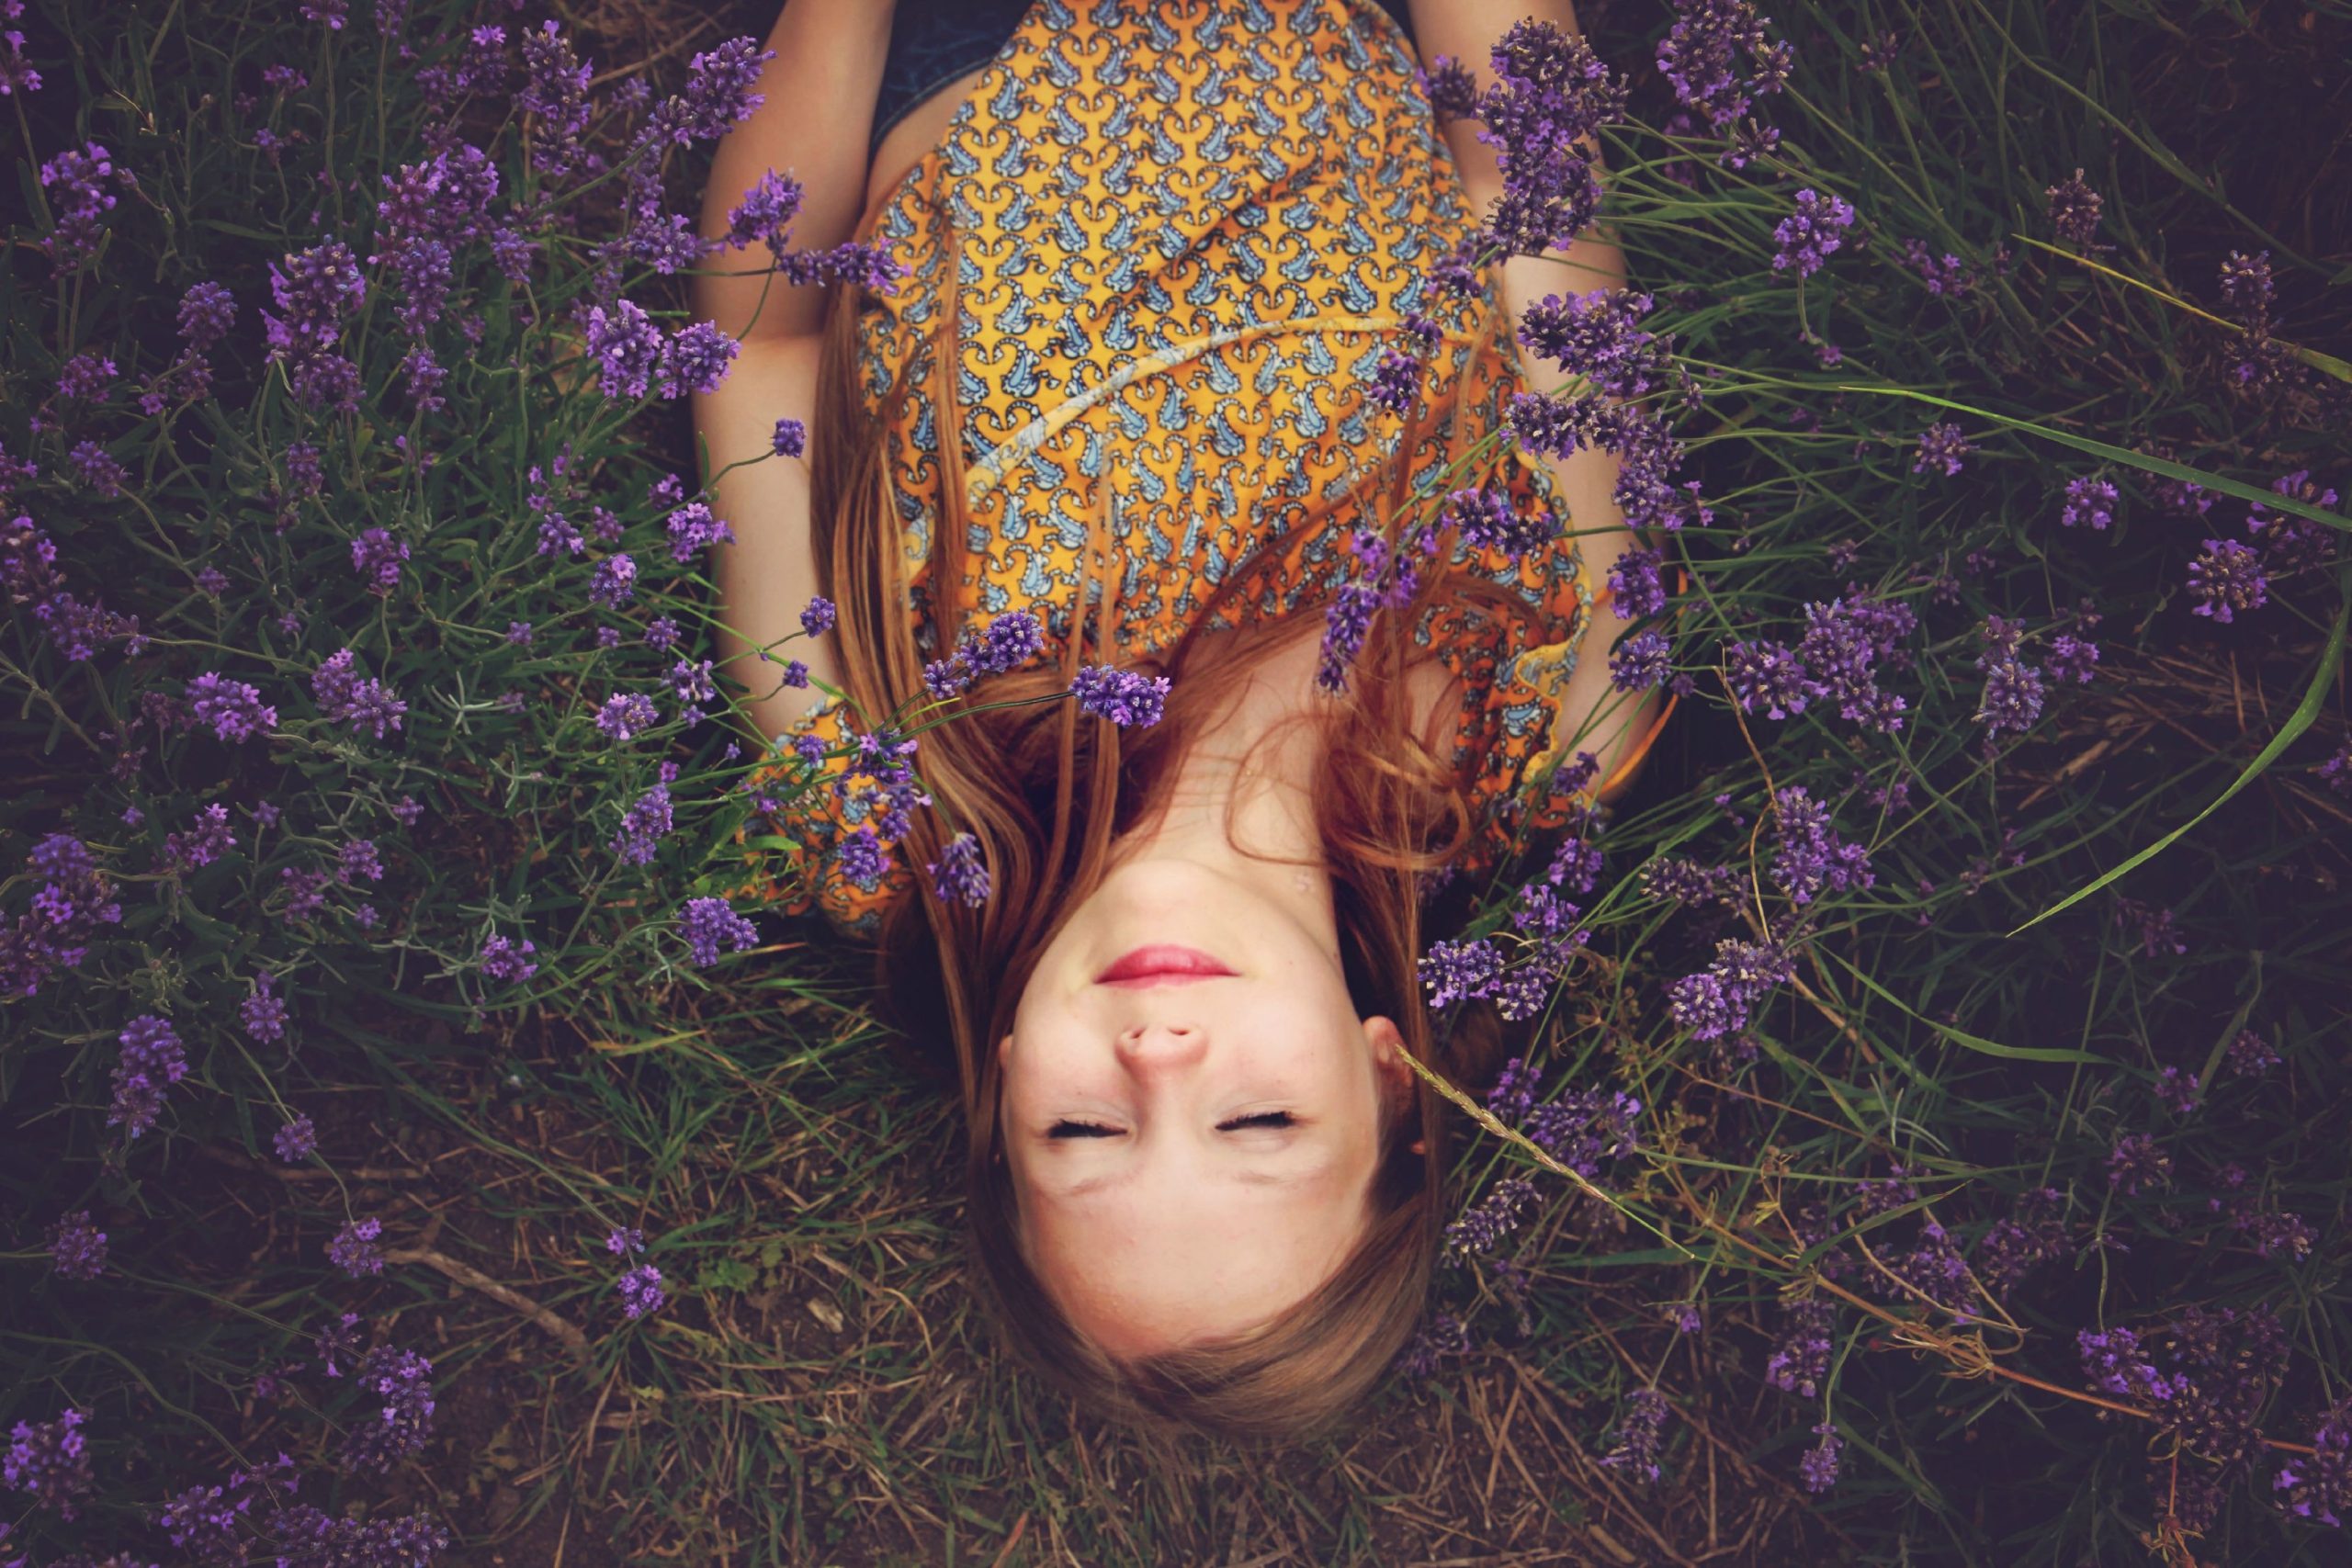 Woman lying in a field of lavendar